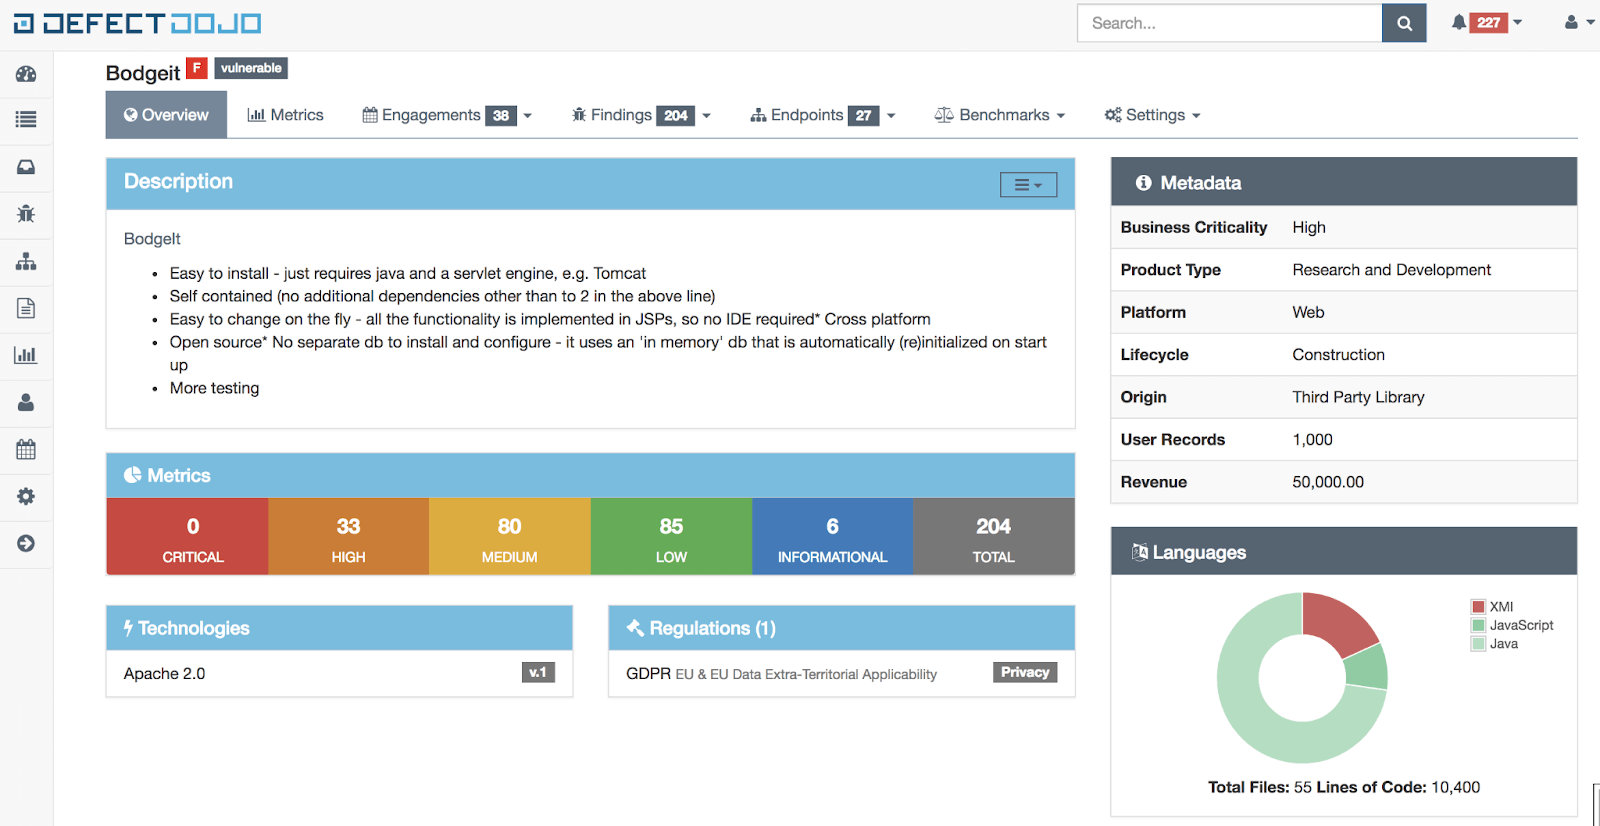 Na imagem mostra o dashboard do DefectDojo onde tem a quantidade de vulnerabilidades de um projeto específico.